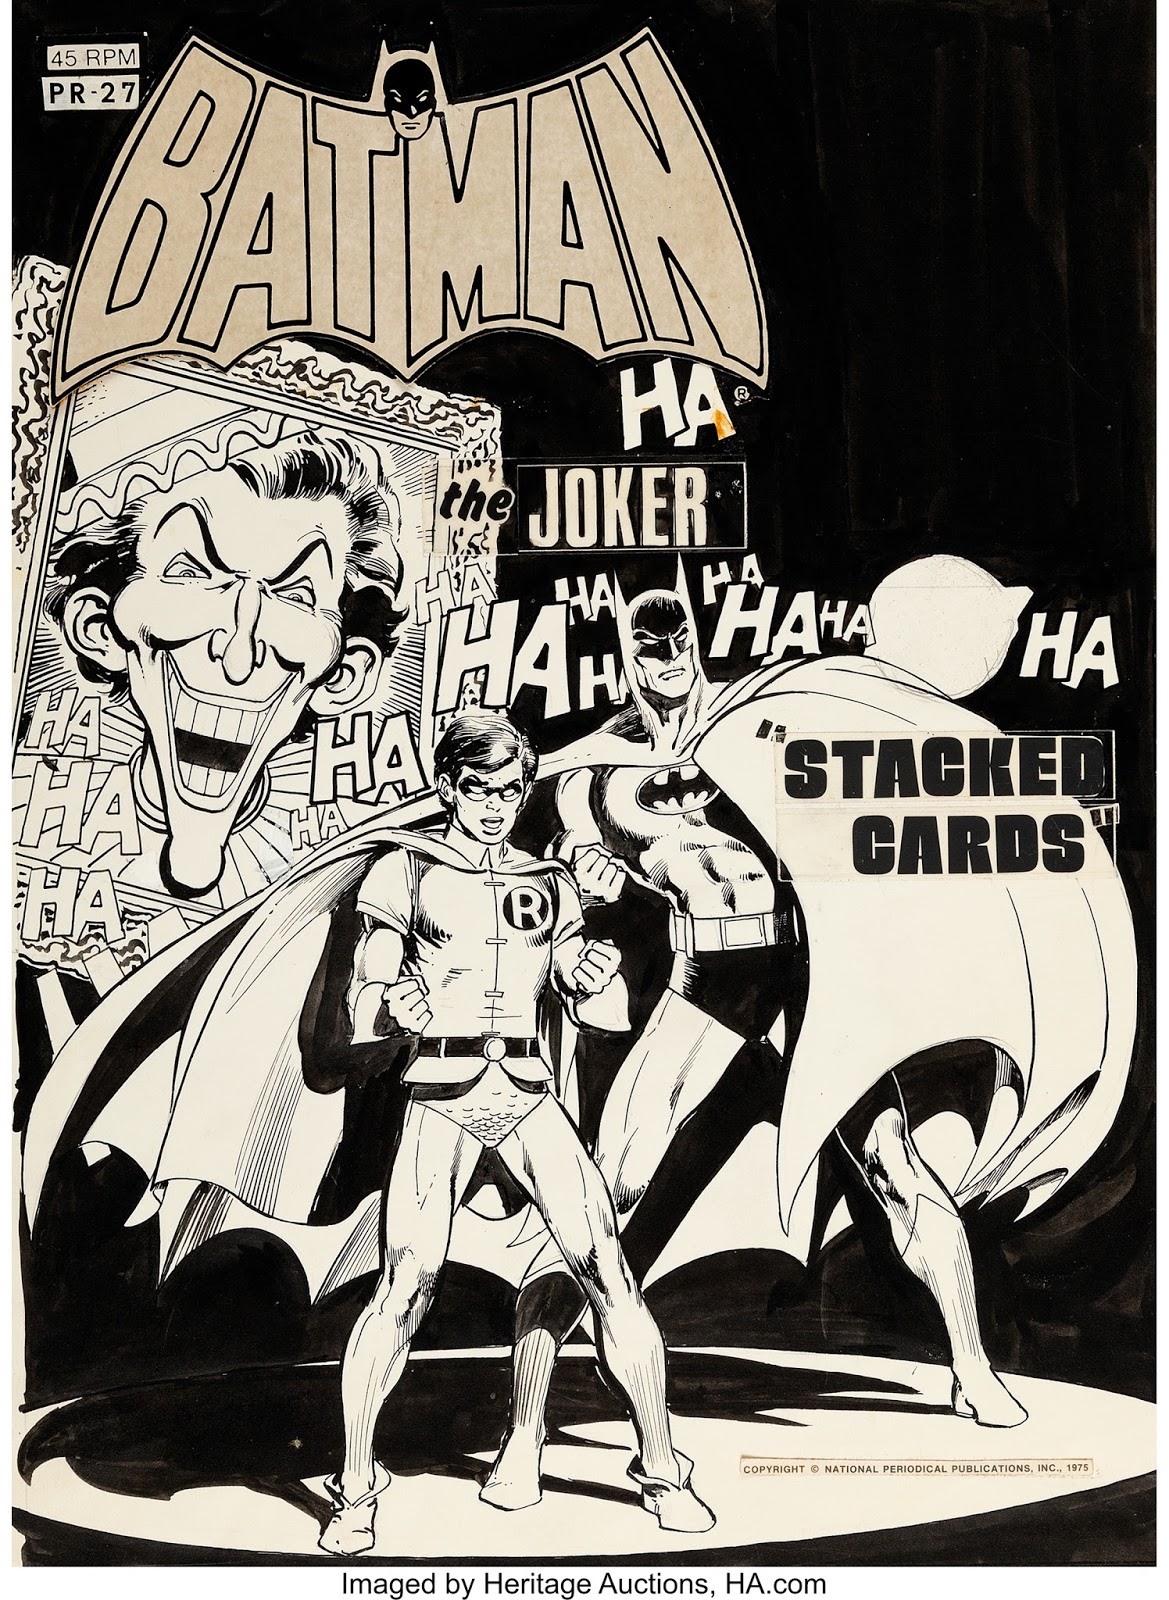 Comic art: Neal Adams and Dick Giordano 